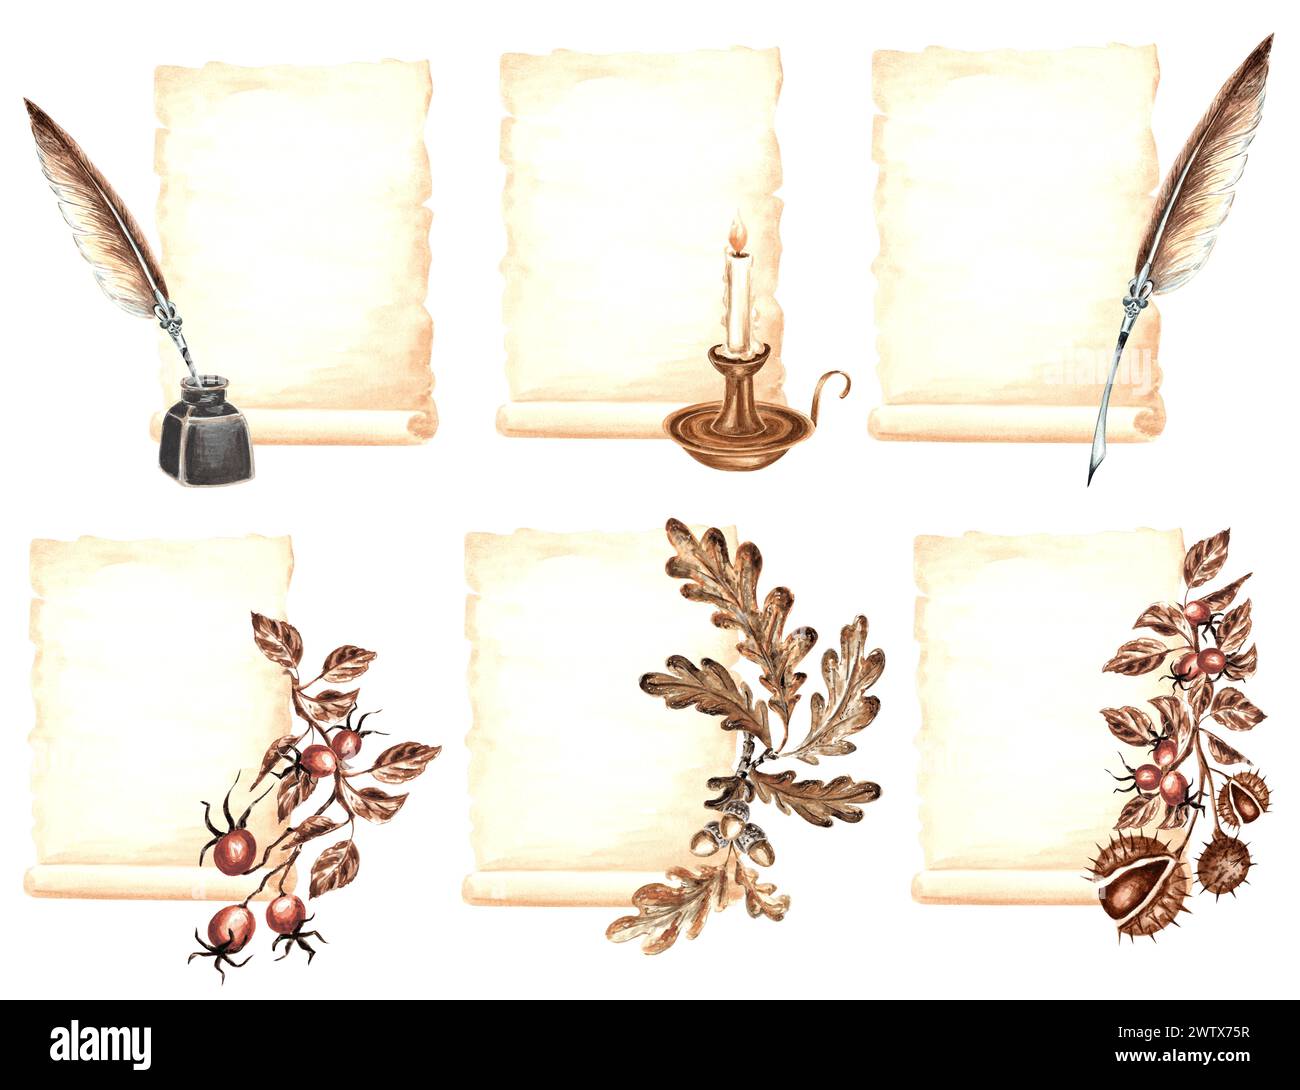 Set aus Vintage-Kompositionen Pergamentpapier mit Tintenfass, Federstift, Kerze und Pflanzenzweigen. Handgezeichnete Aquarellillustration von Papyru Stockfoto